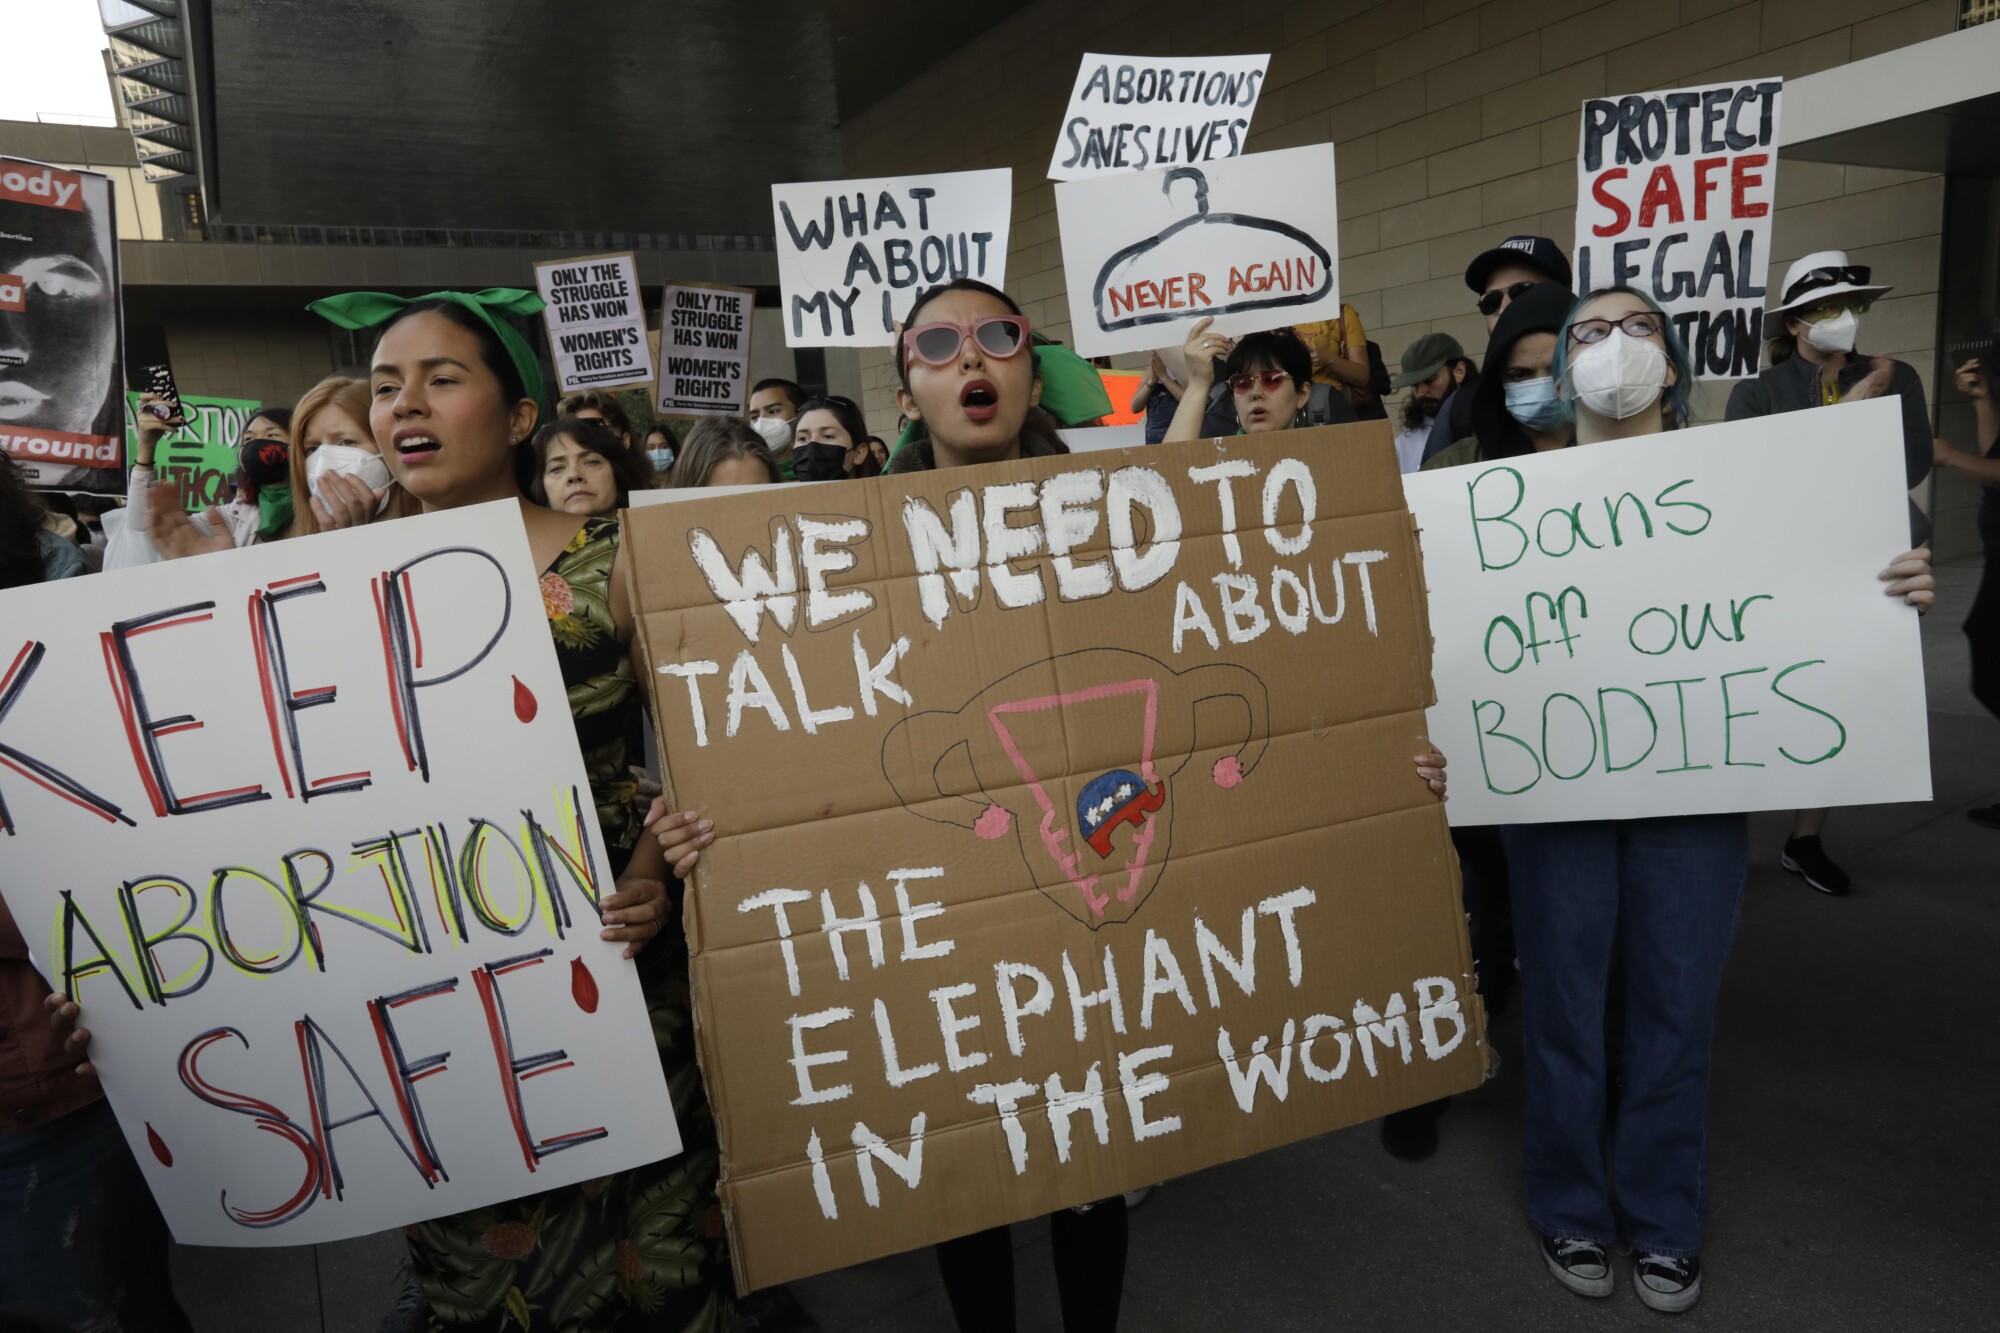 Un manifestant avec une étiquette qui dit "Nous devons parler de l'éléphant dans l'utérus"